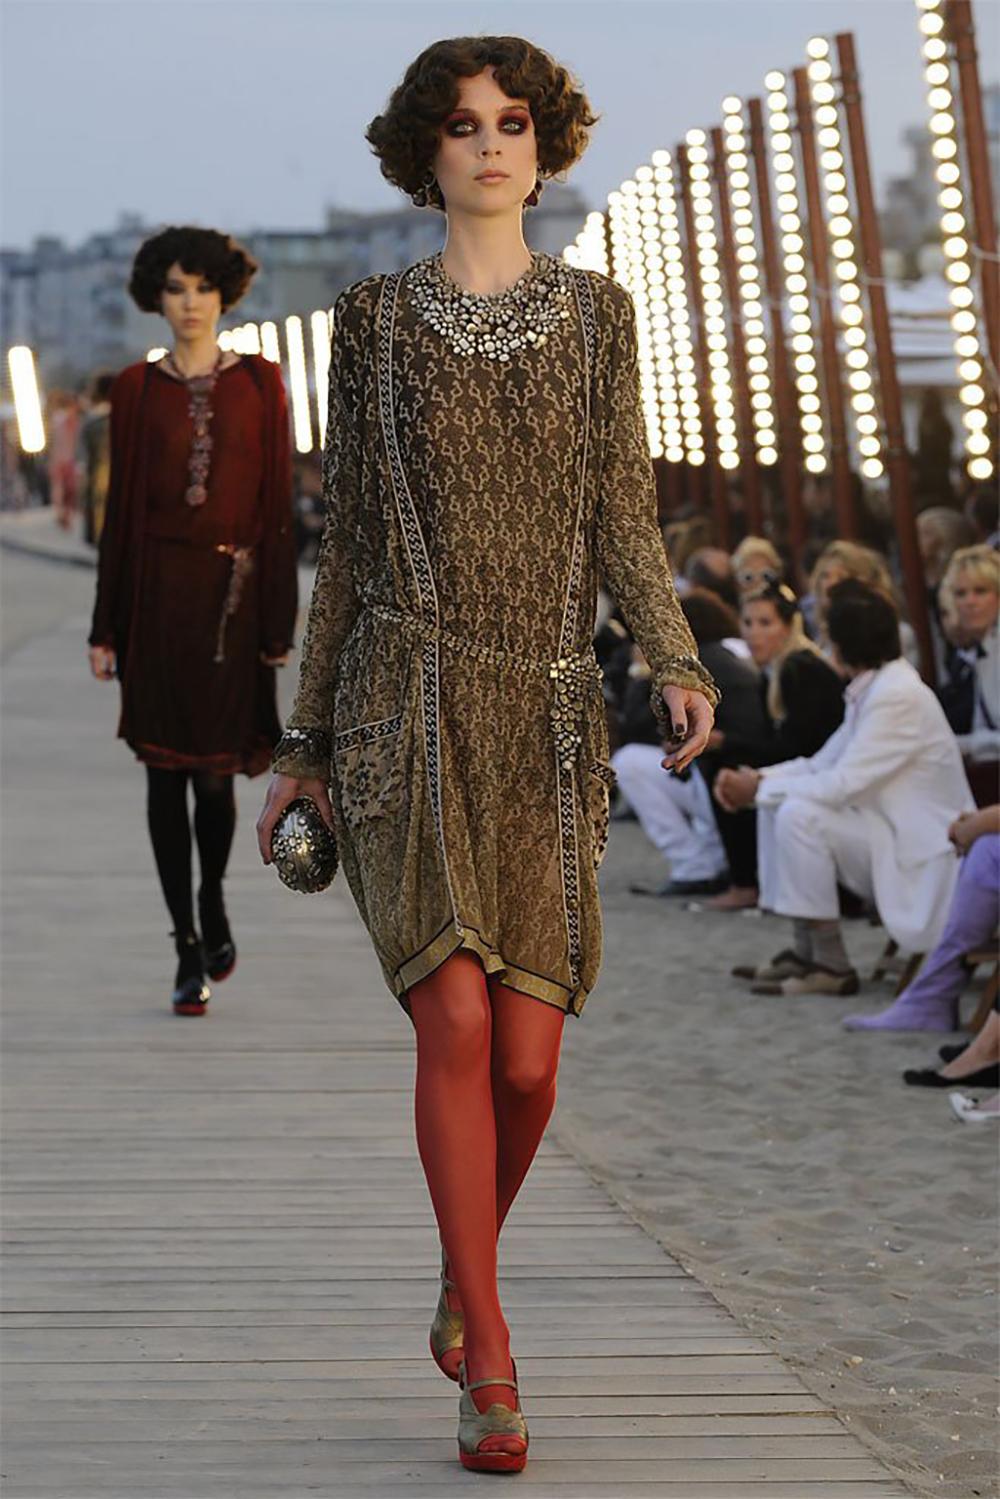 Fabelhaftes schimmerndes Chanel Kleid mit Gürtel aus der Catwalk of Paris / VENICE Cruise Collection von Herrn Karl Lagerfeld.
Größenbezeichnung 40 FR. Der Zustand ist tadellos, keine Abnutzungserscheinungen.
